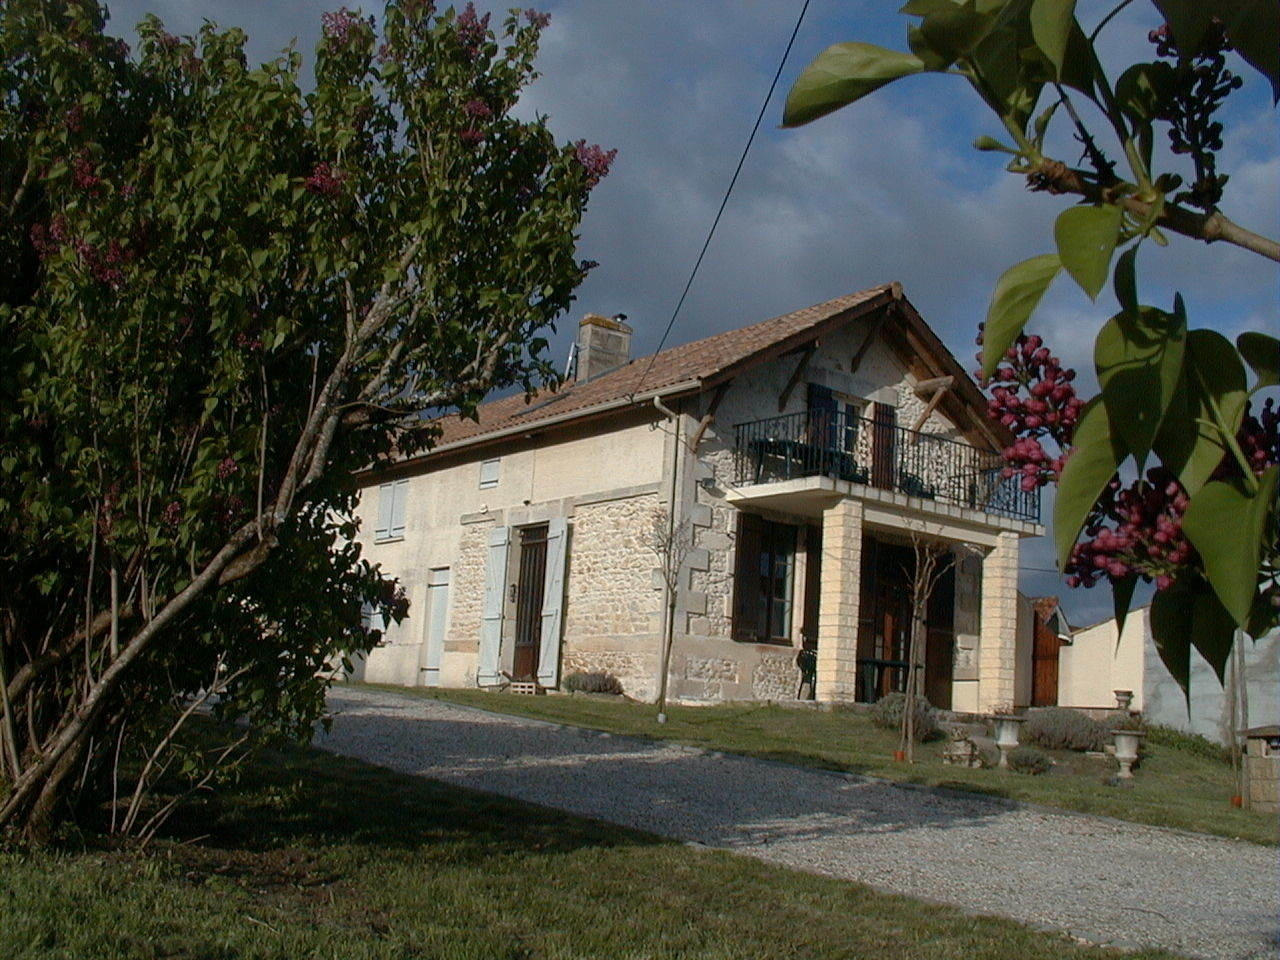 Manoir La Lagune - Ferienhaus mit Blick auf die Gi Ferienhaus in Frankreich